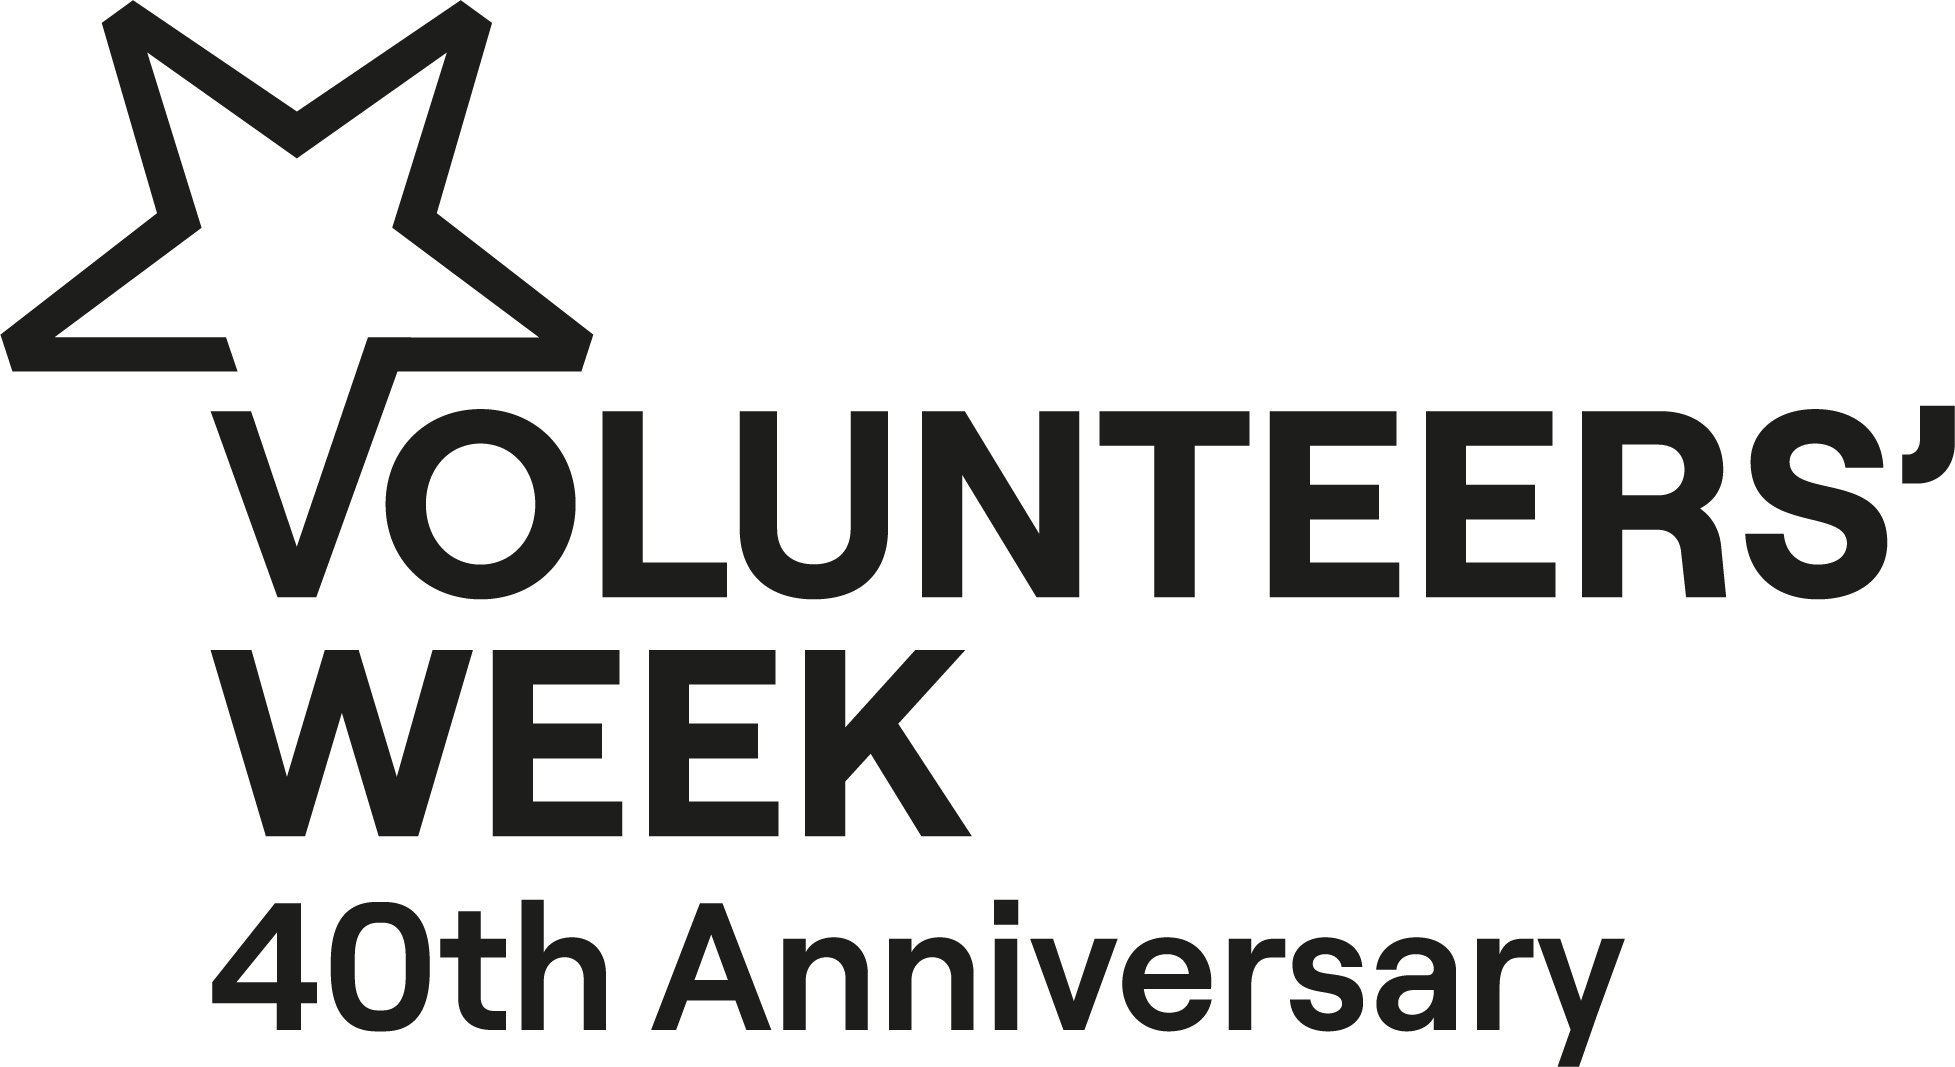 Volunteers Week 40th anniversary logo with star in corner